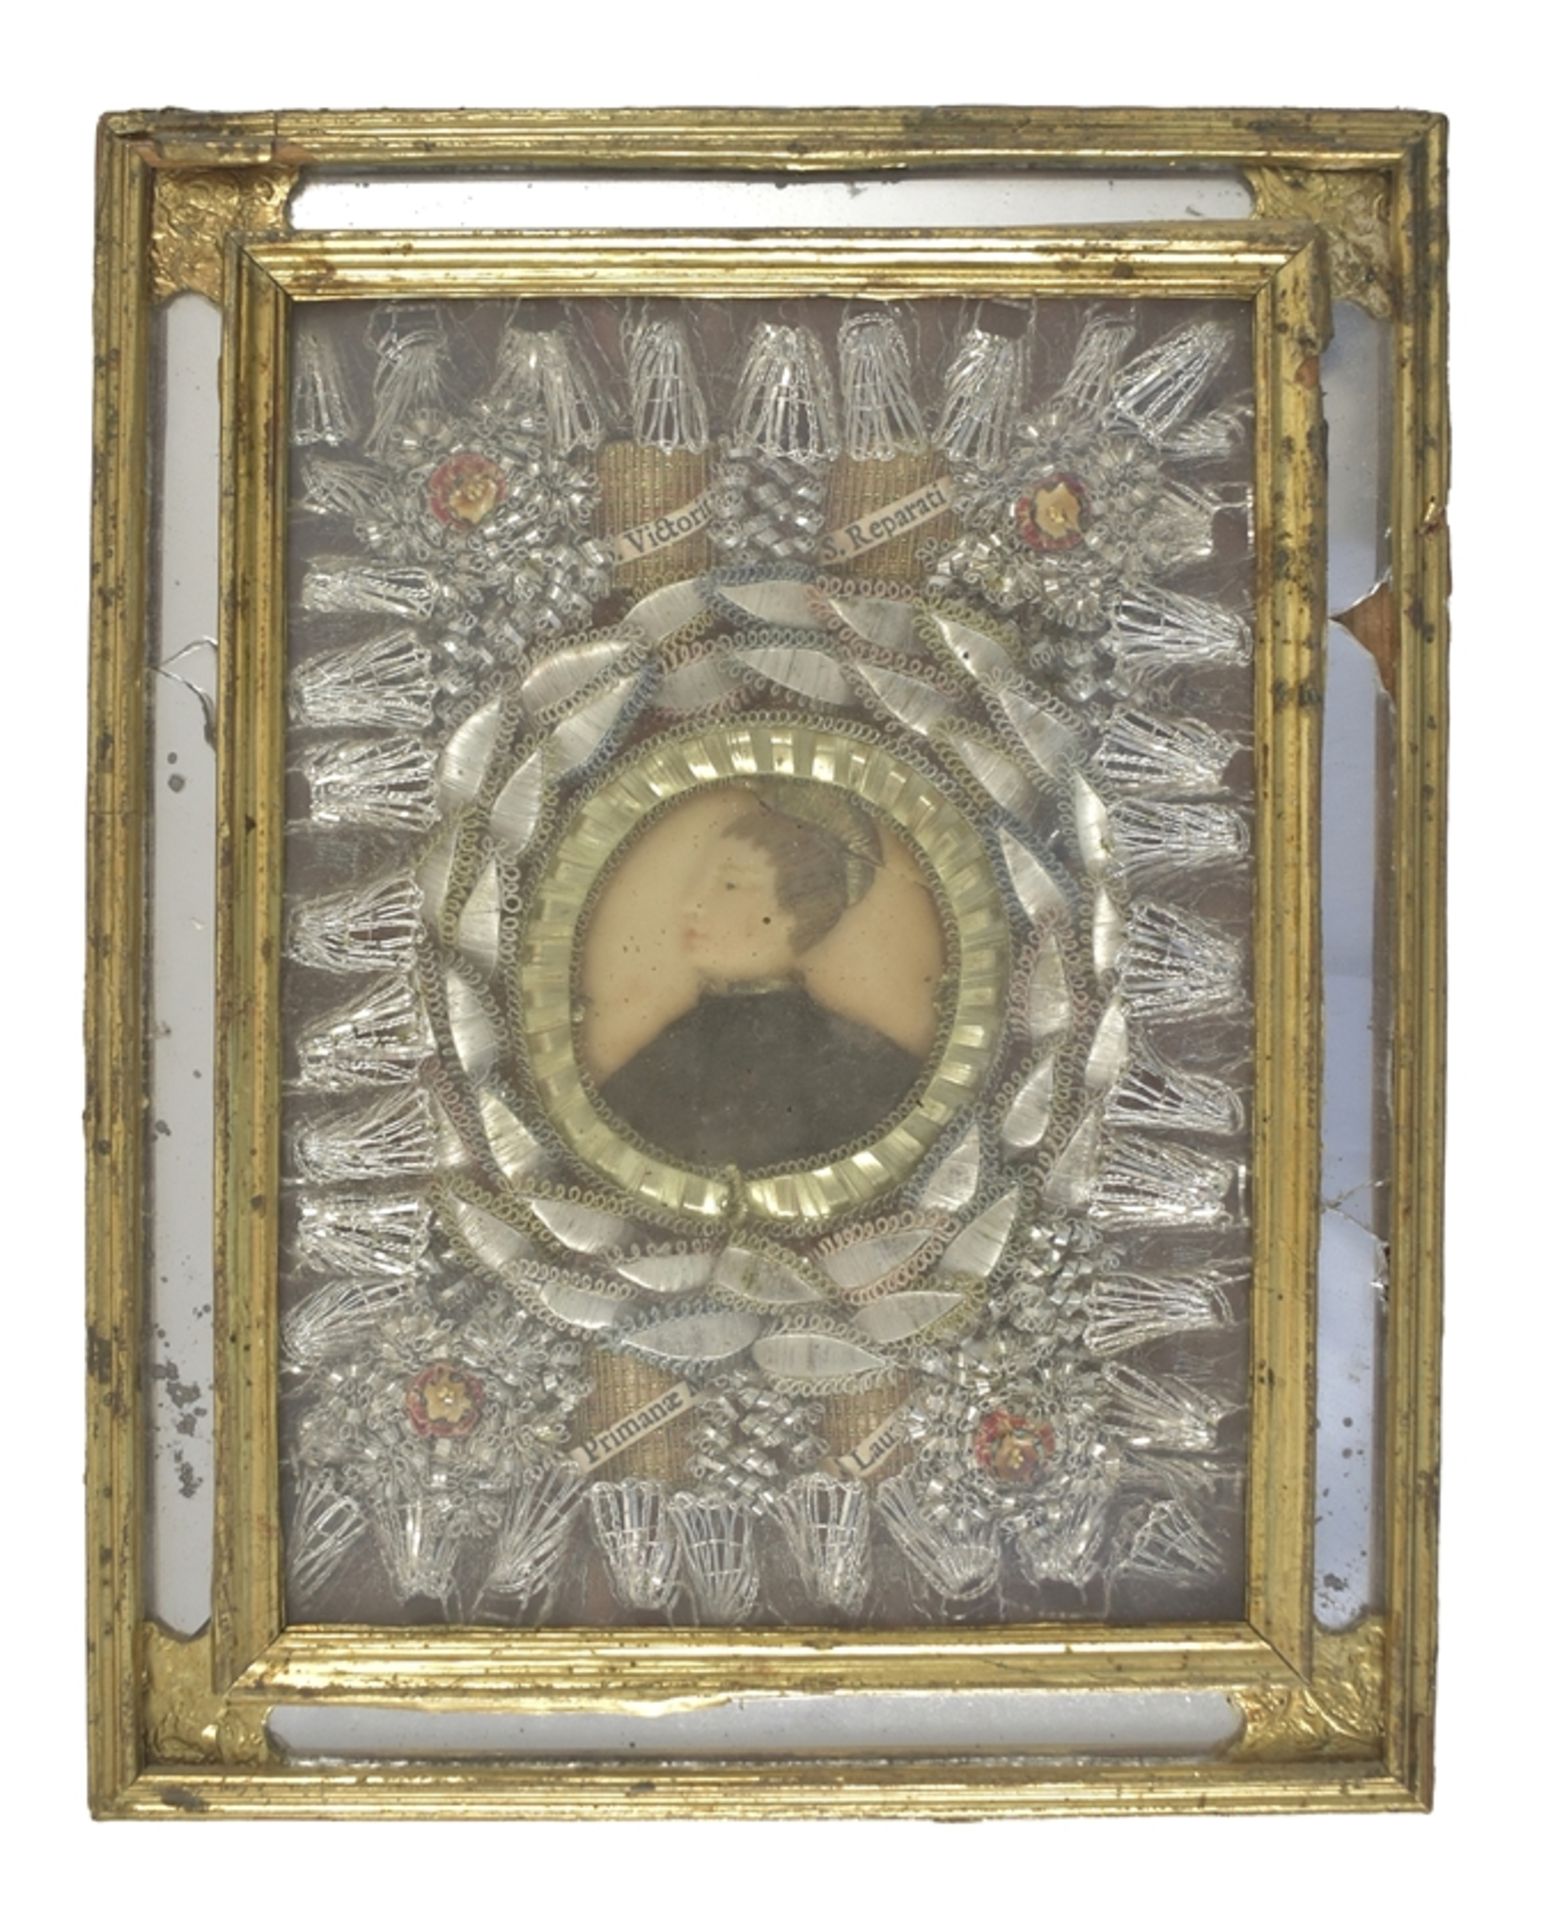 Andachtsbild. Wachsportrait. Silberspitze und Blüten. Verspiegelter Rahmen. 19. Jh. 17 x 12 cm Samm